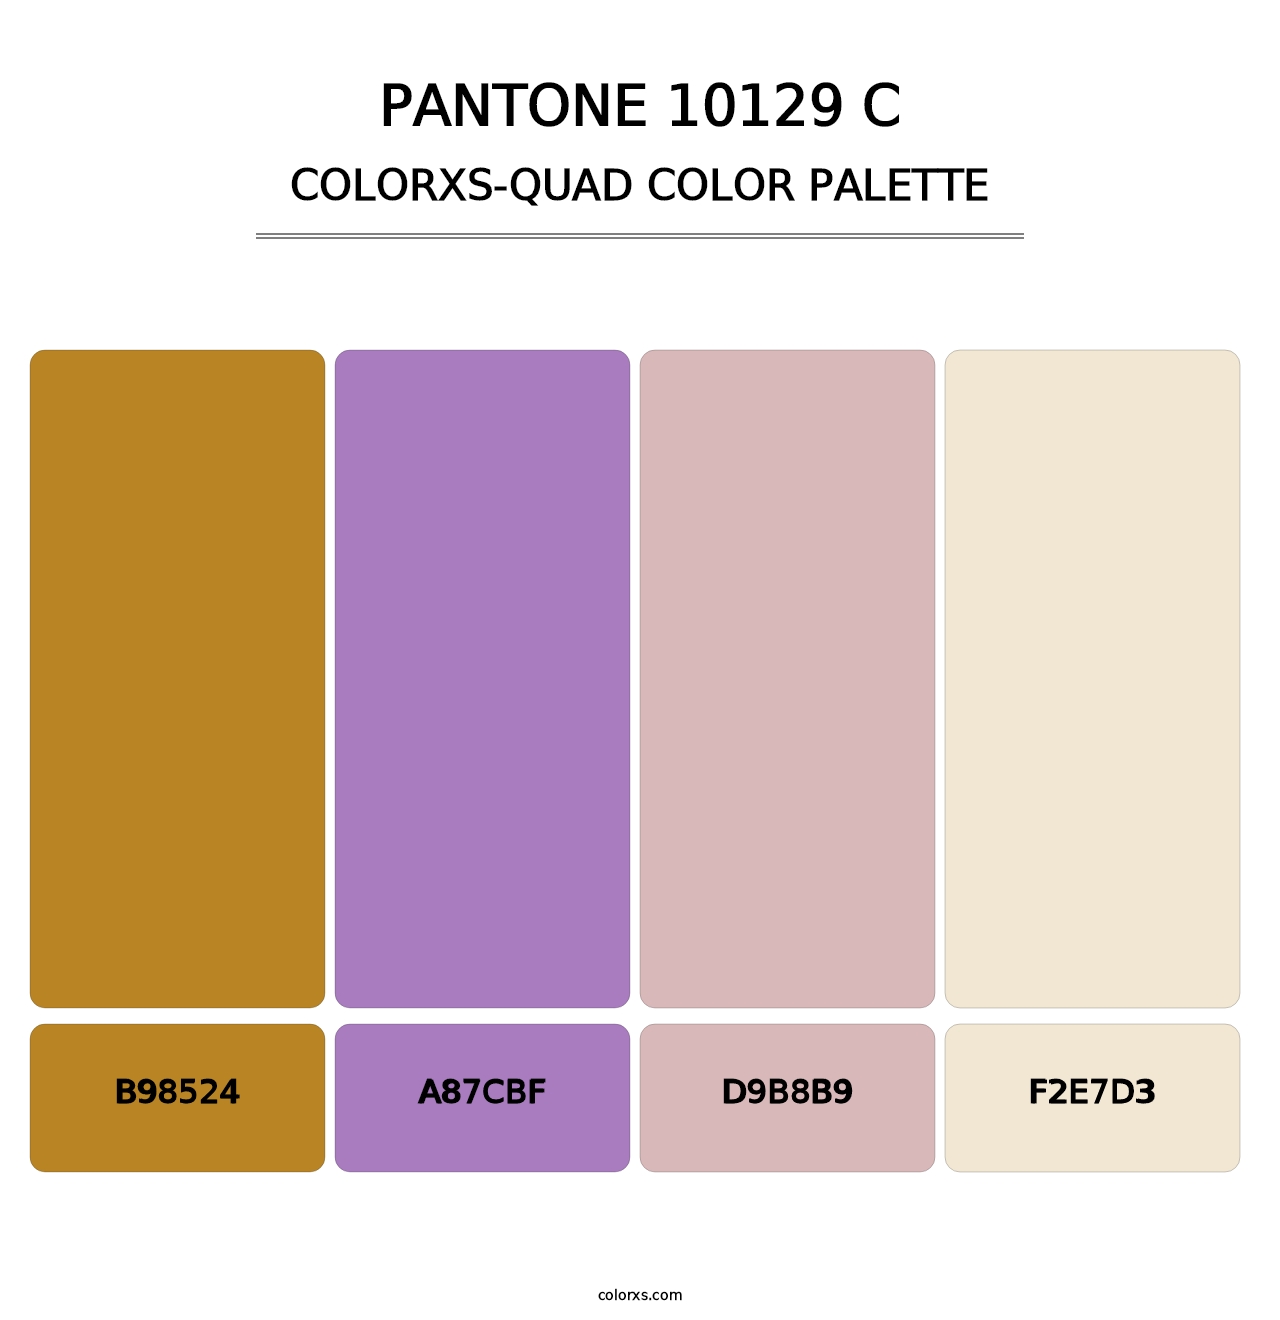 PANTONE 10129 C - Colorxs Quad Palette